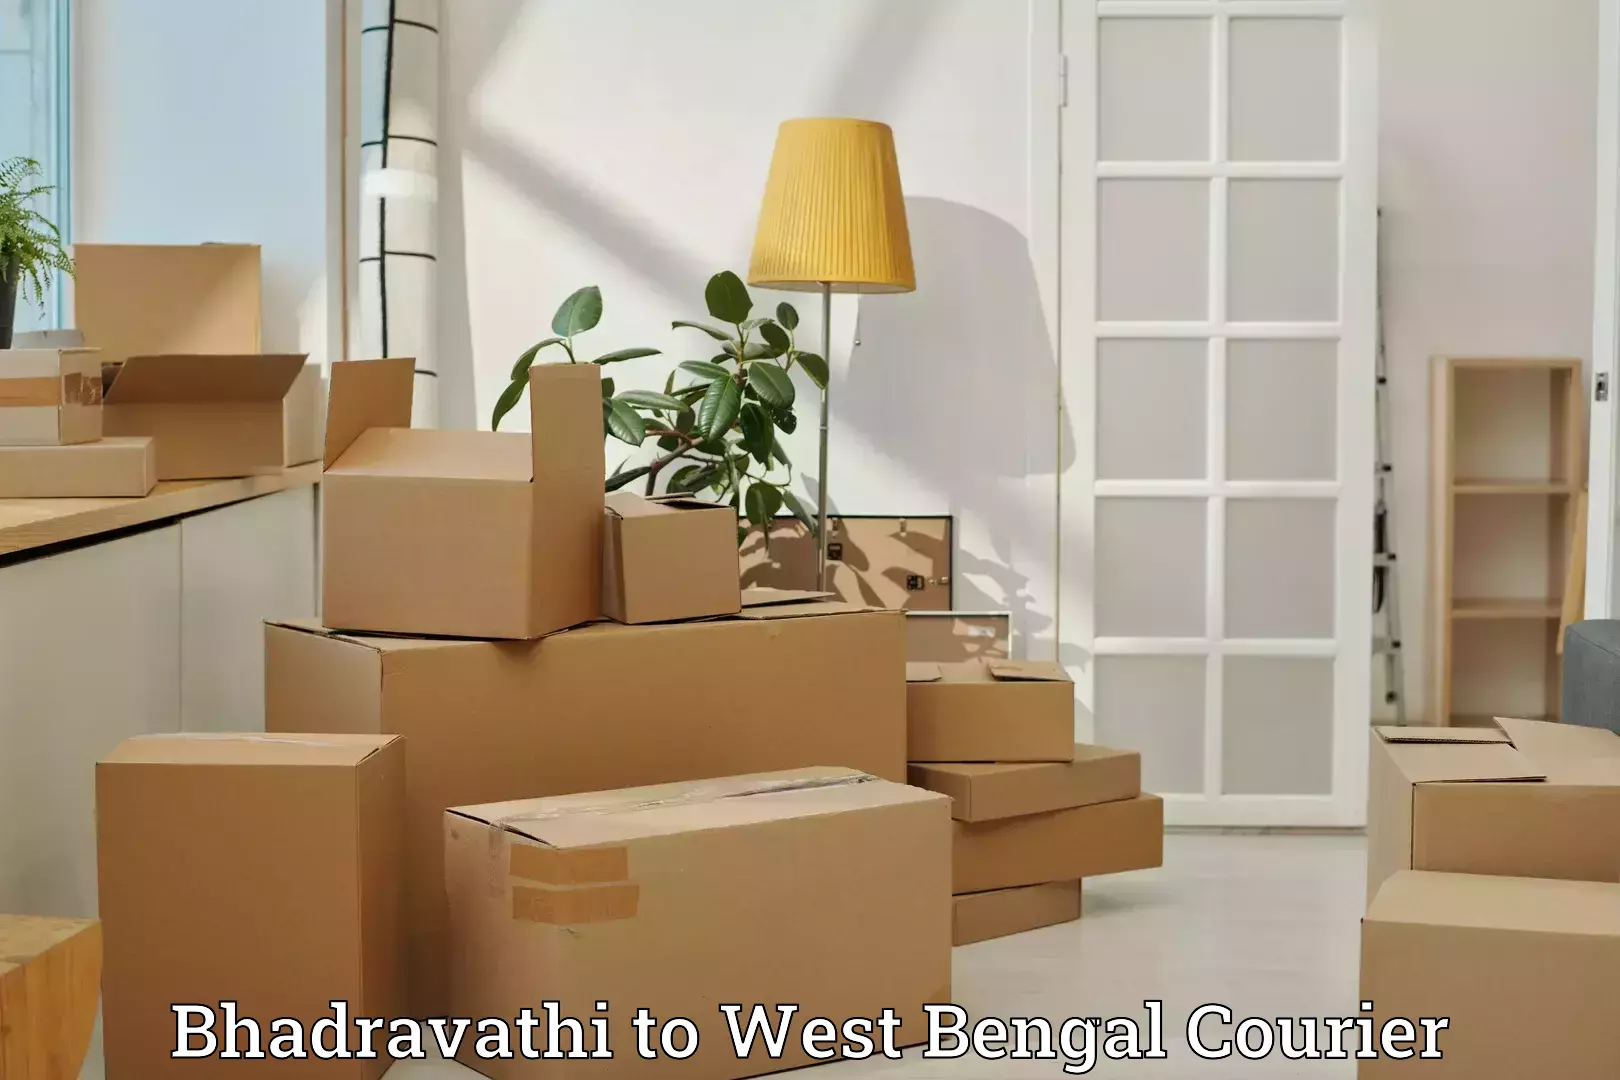 Express luggage delivery Bhadravathi to Maynaguri